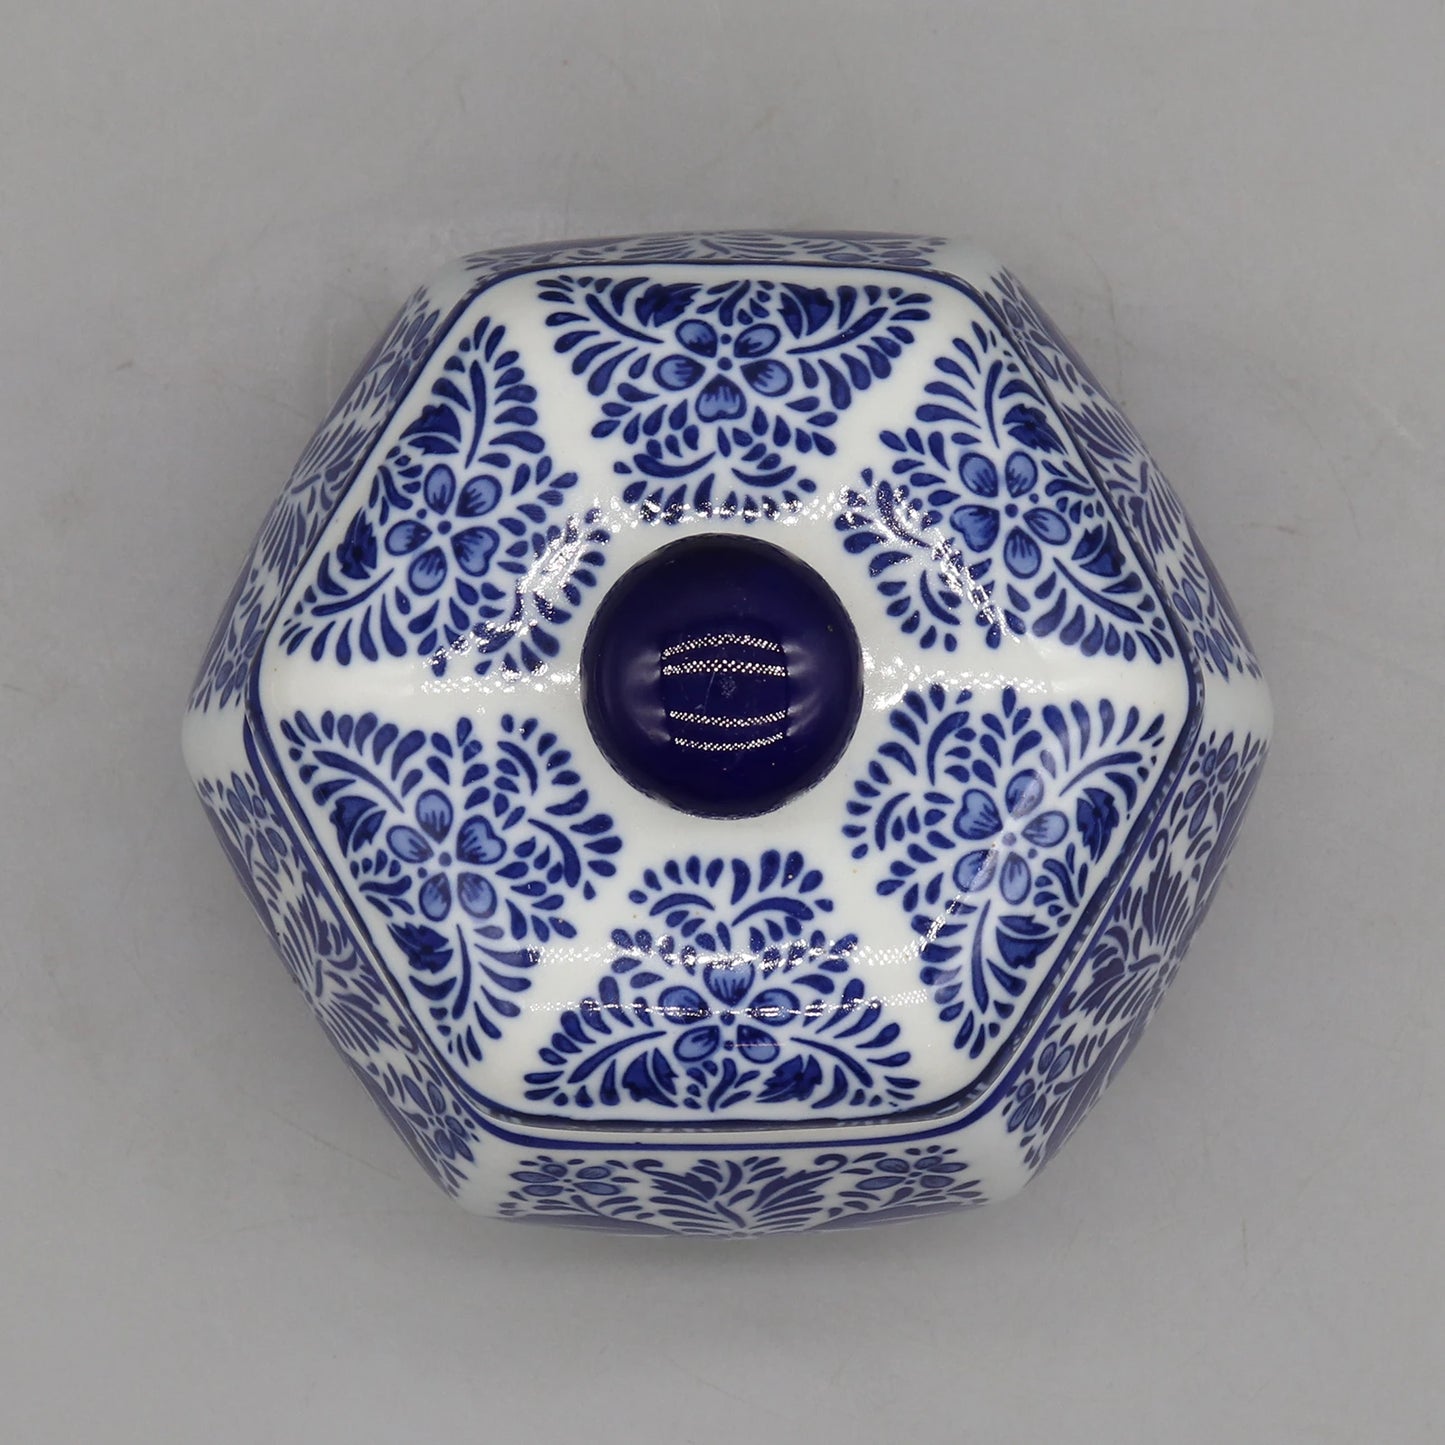 Ceramic Jar, Vase, Hexagonal Container, Home Decoration